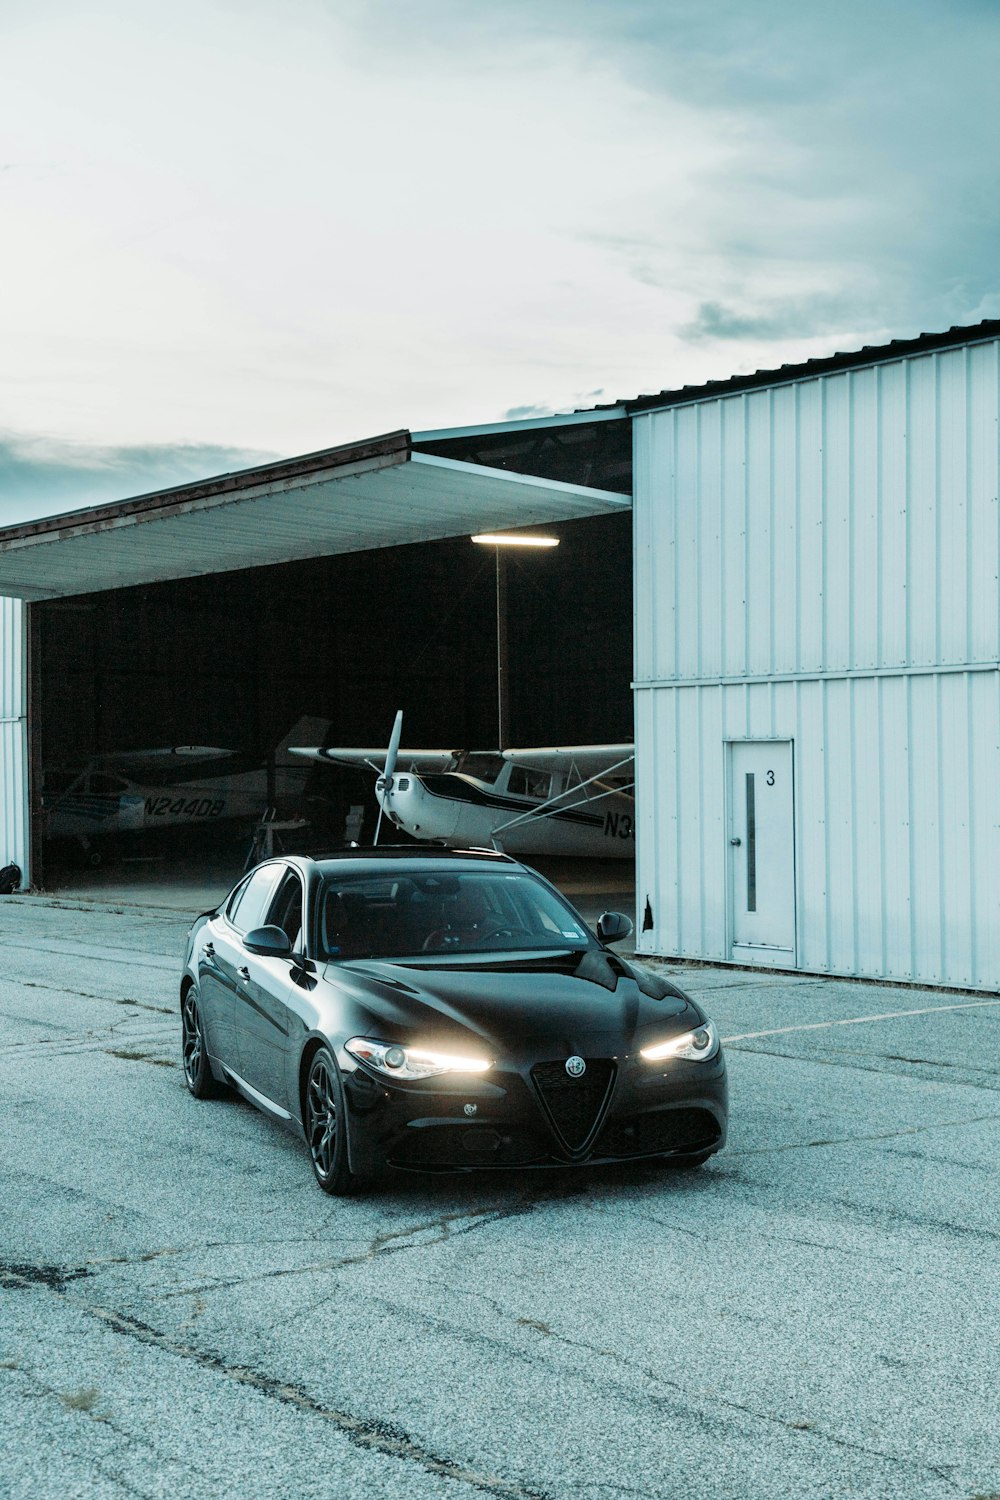 Ein schwarzes Auto parkt vor einem Hangar